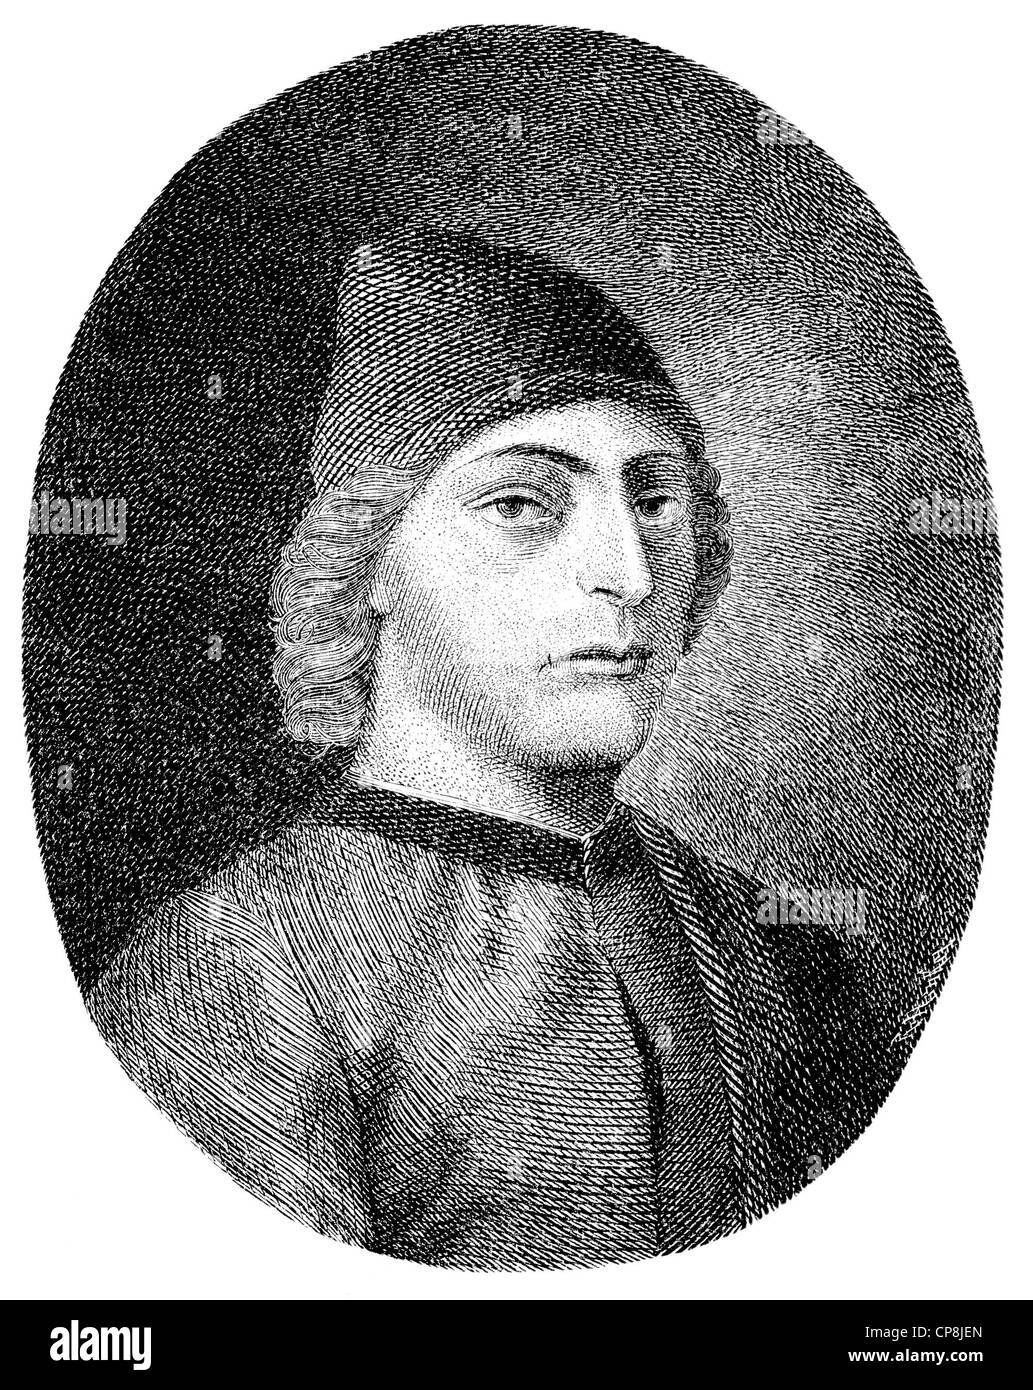 Guarino da Verona o Guarino Veronese, Guarino Guarini, 1370 - 1460, studioso e umanista del Rinascimento italiano, Historis Foto Stock